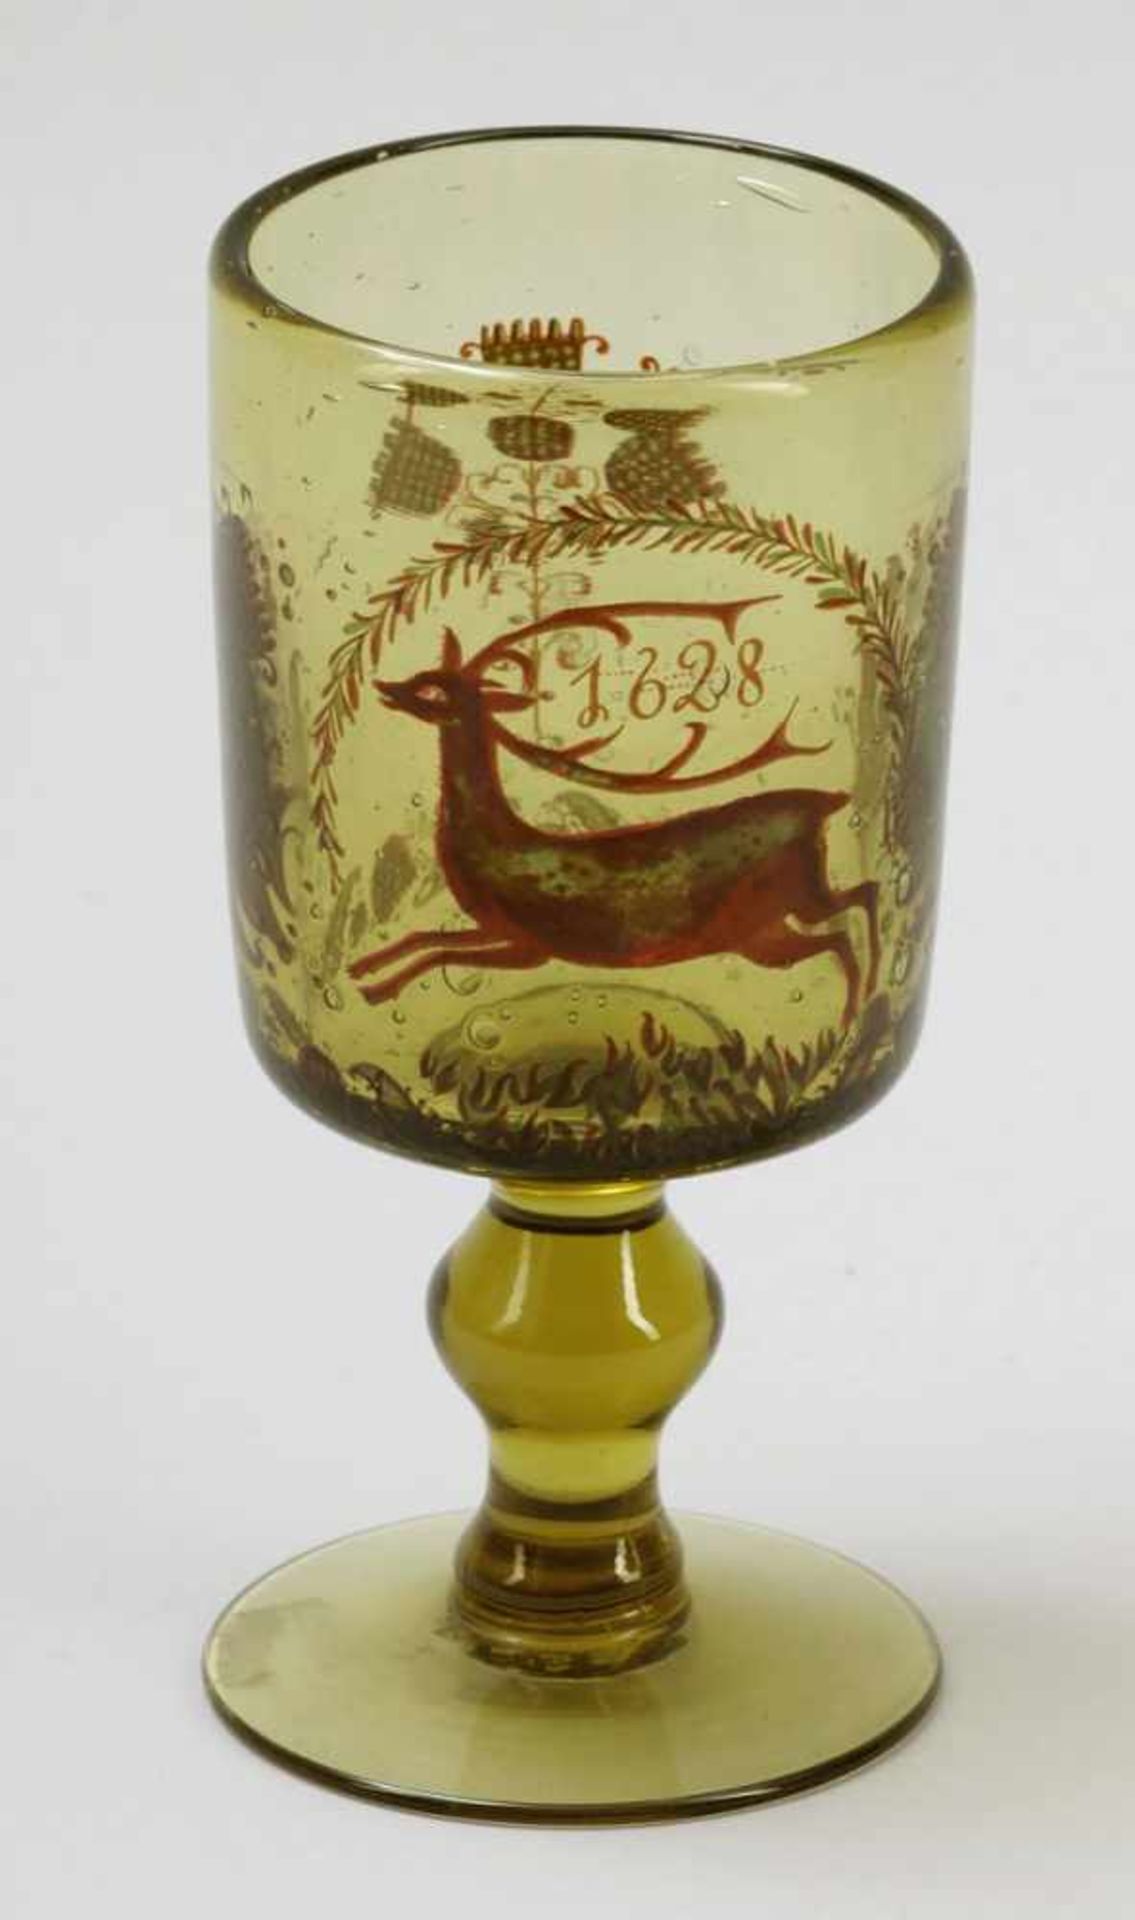 Fußbecher- Hirsch (Achtender) mit der Jahreszahl 1628 - Grünes, basiges Glas. Polychrom bemalt.